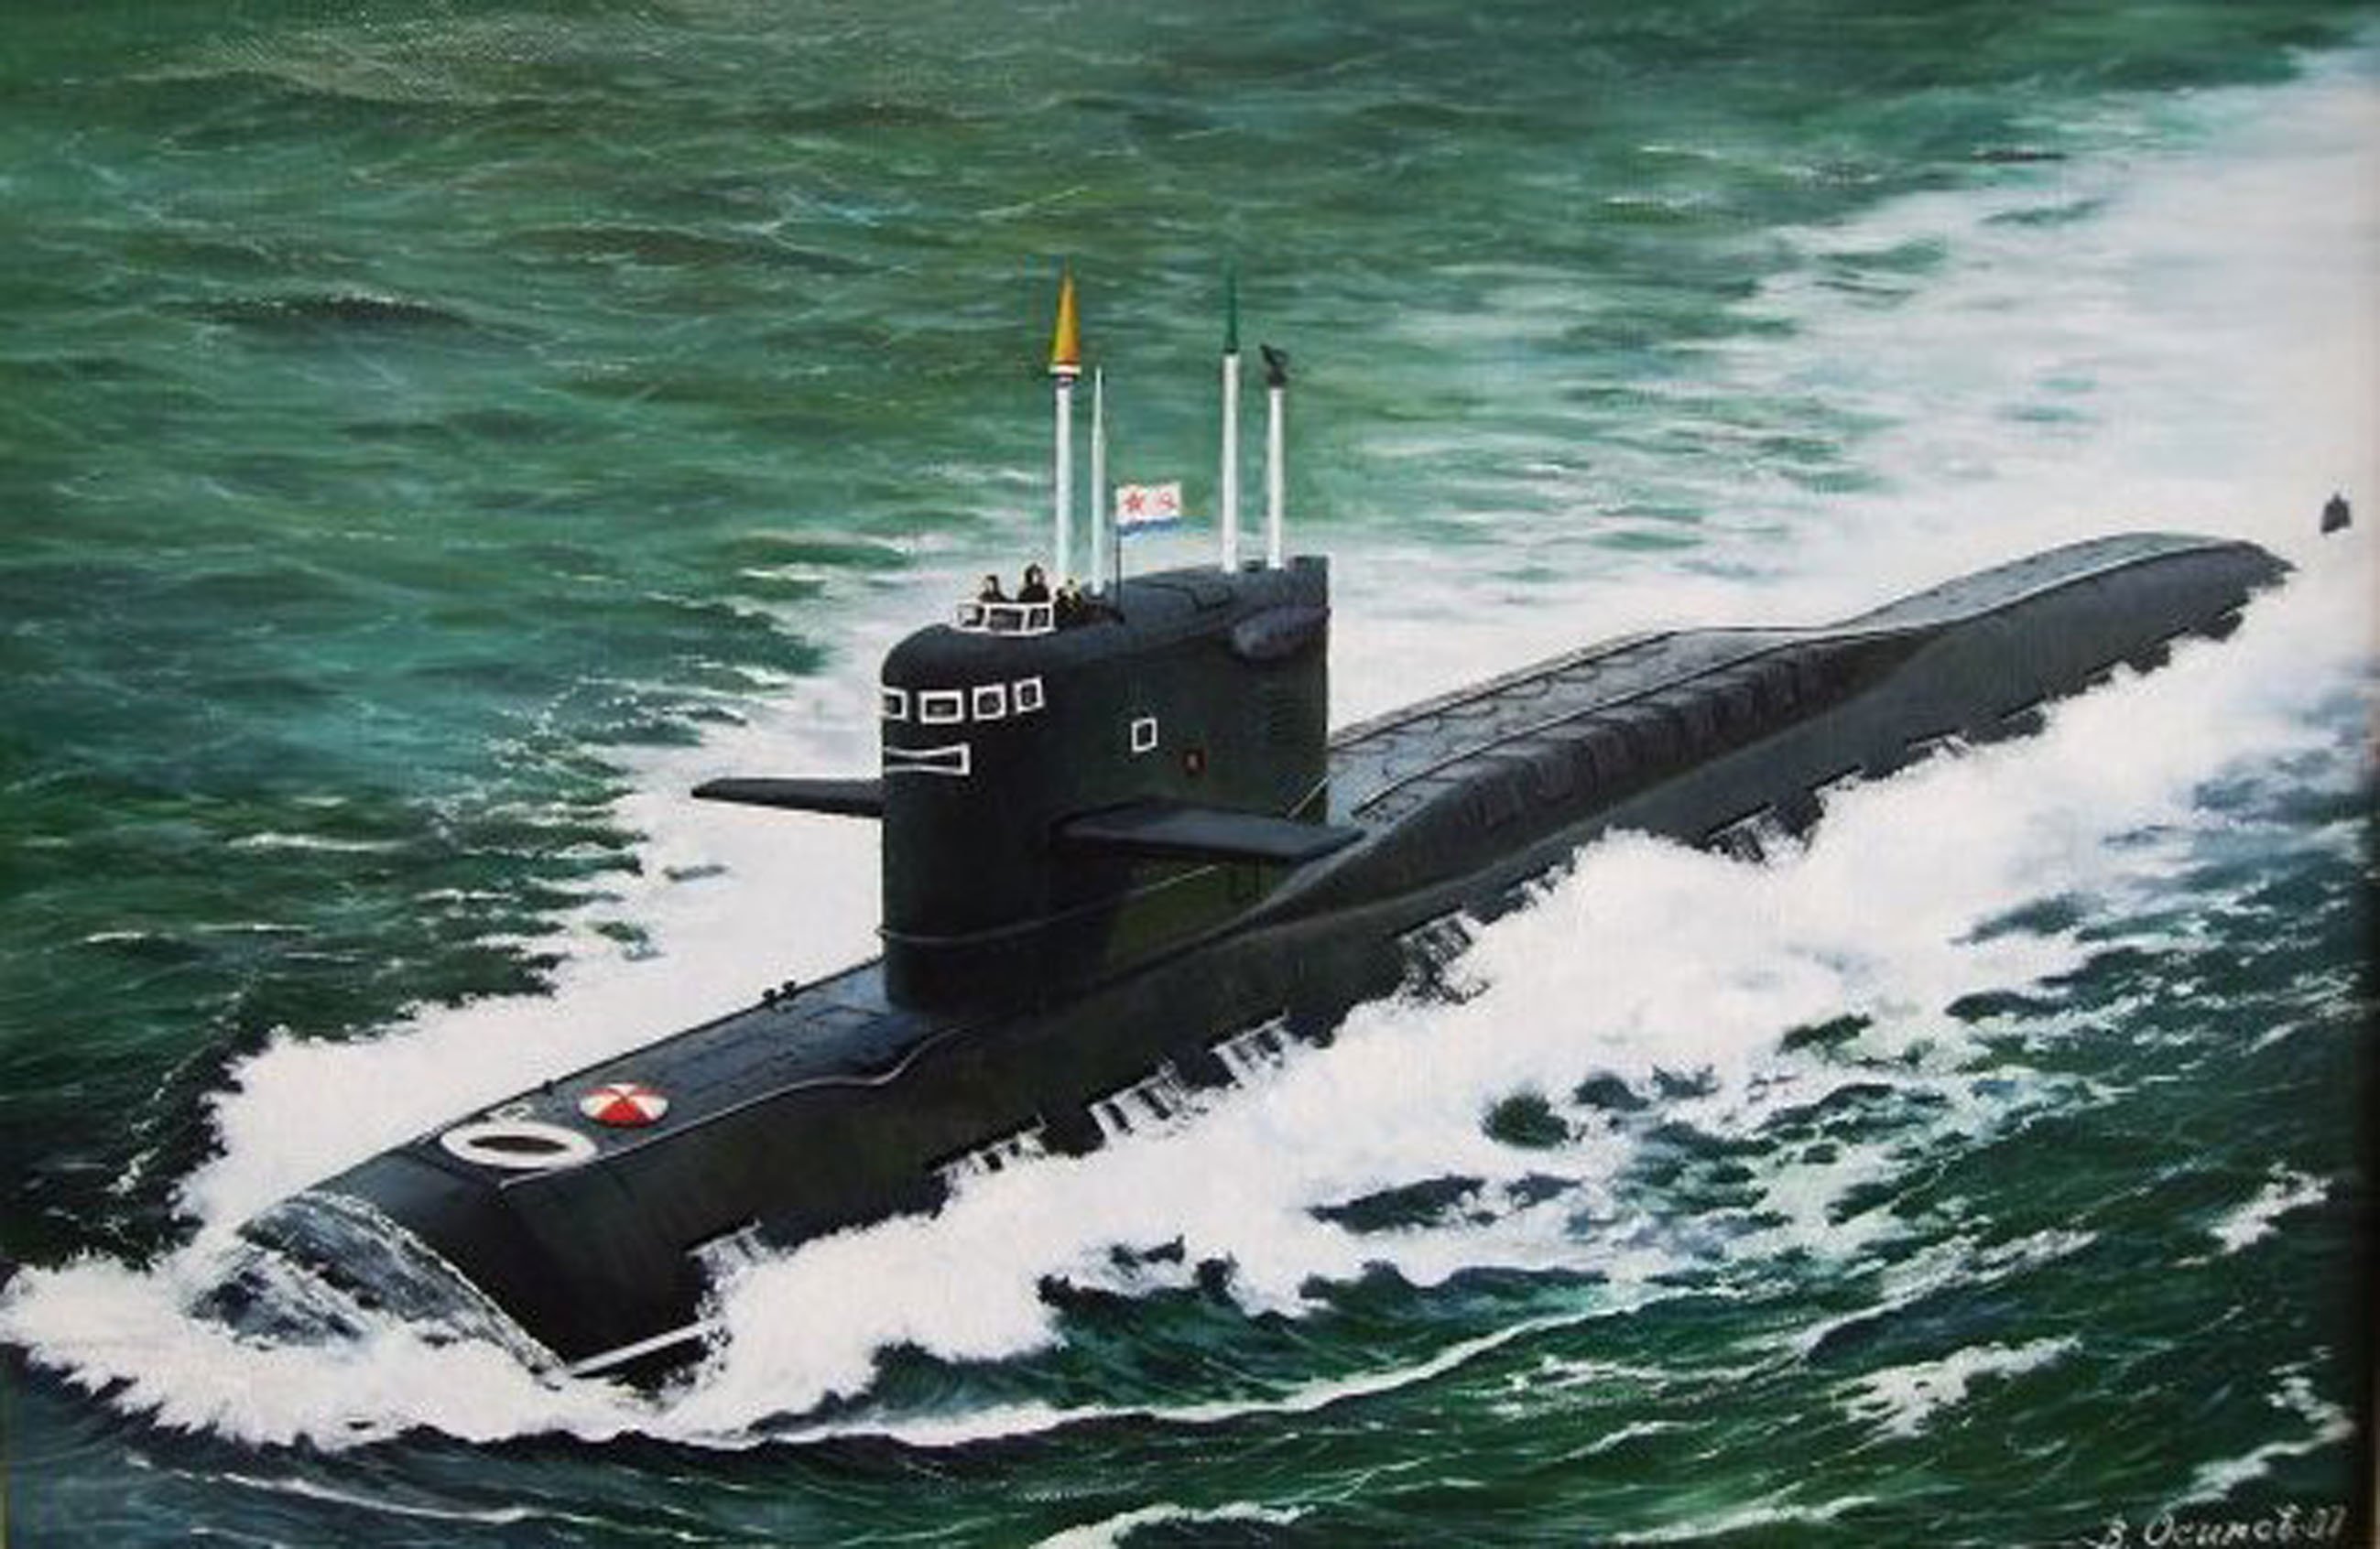 Пл ка. Подводная лодка 667а навага. Подводная лодка 667а. Подводные лодки проекта 667. РПКСН проекта 667а навага.